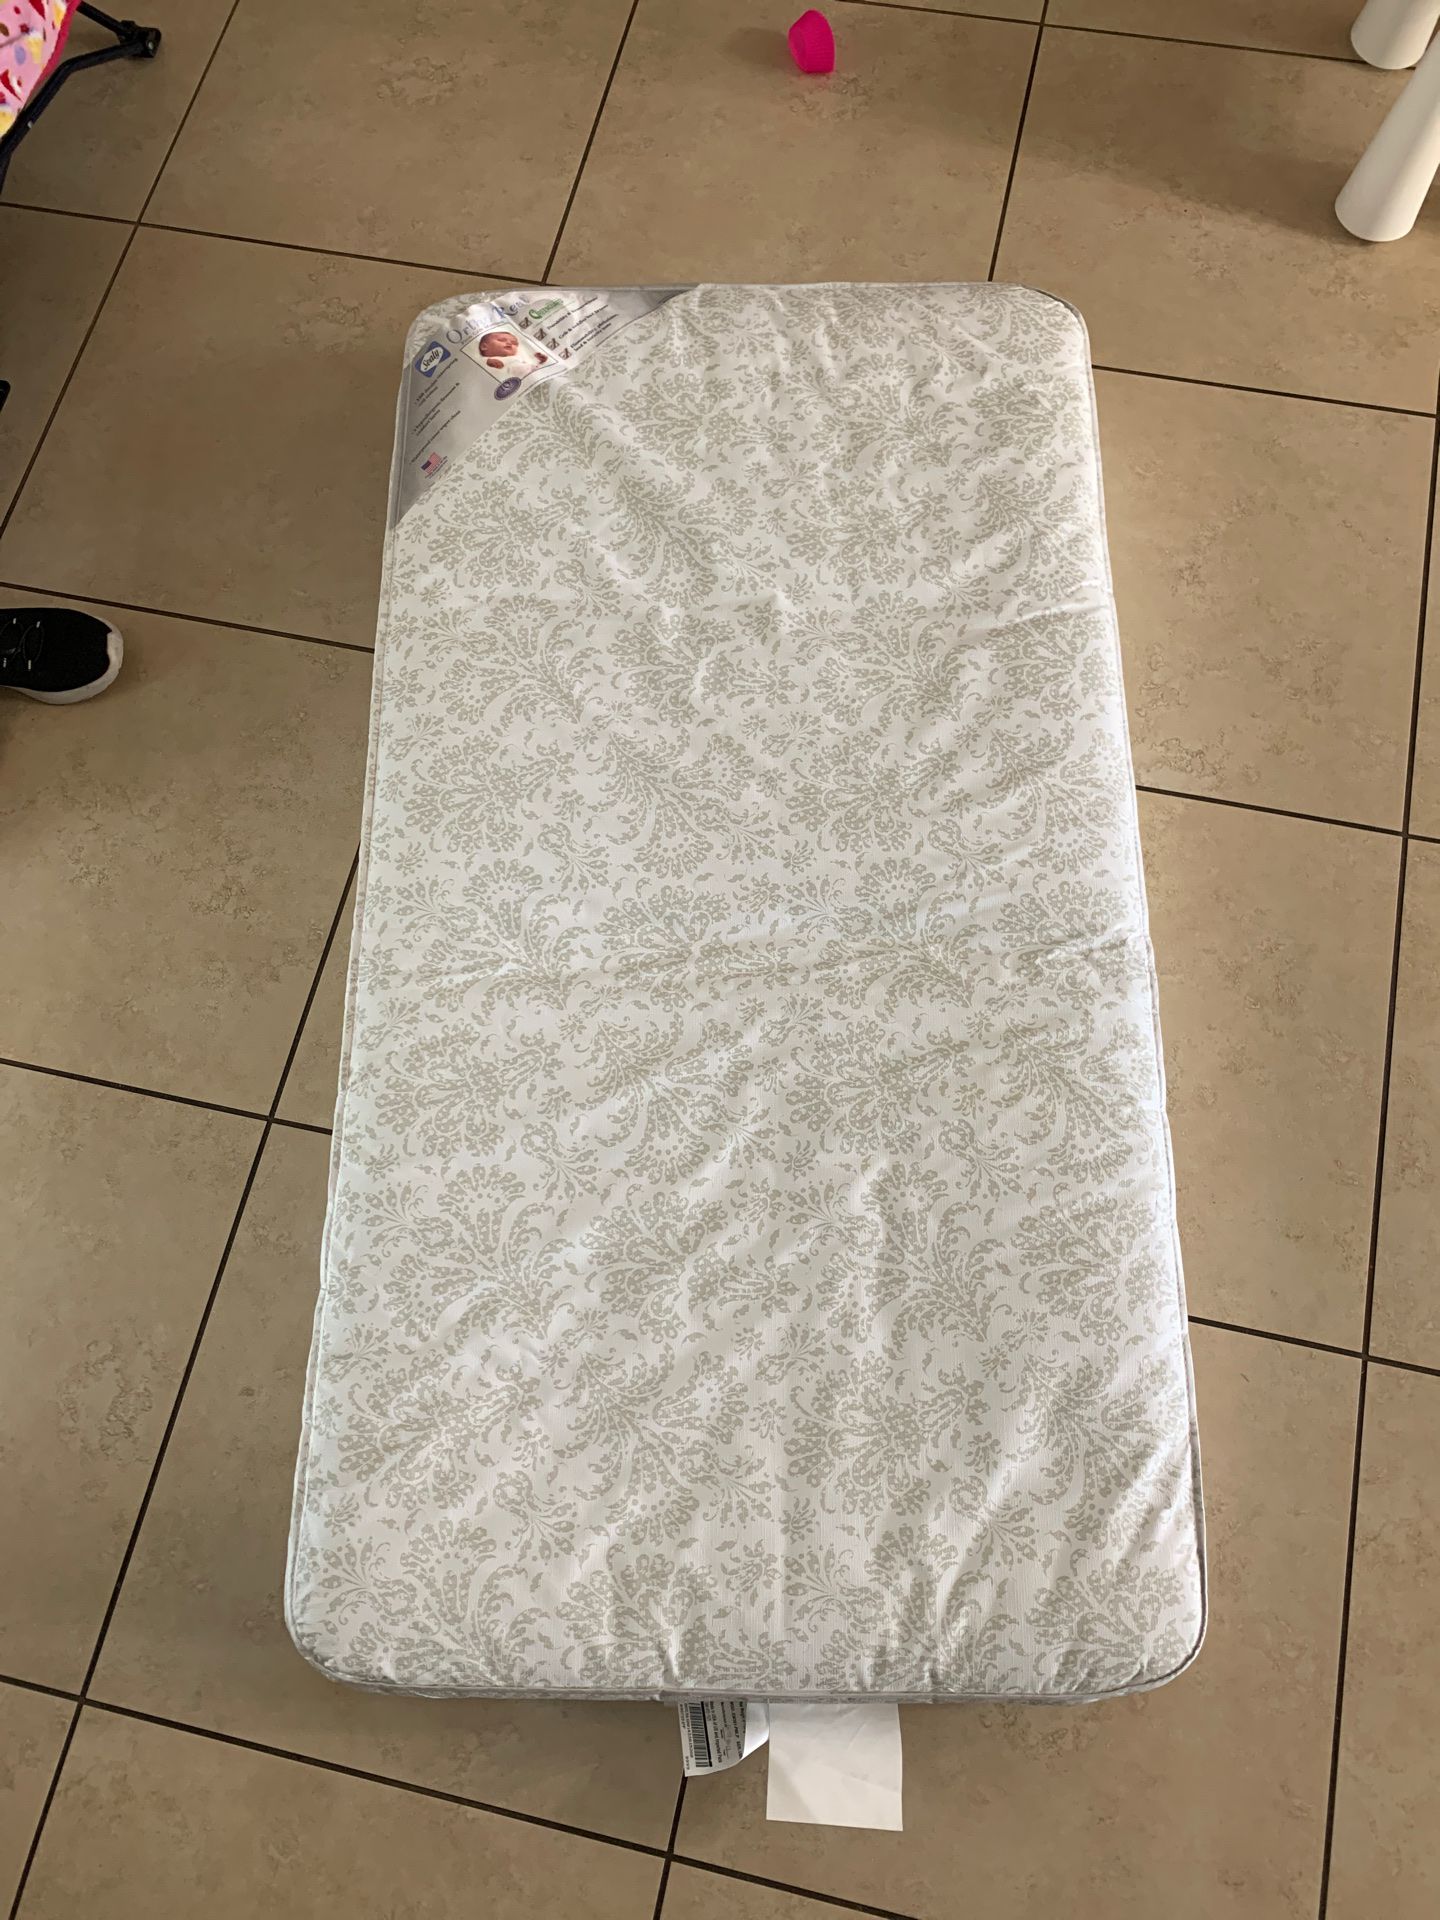 Free baby mattress